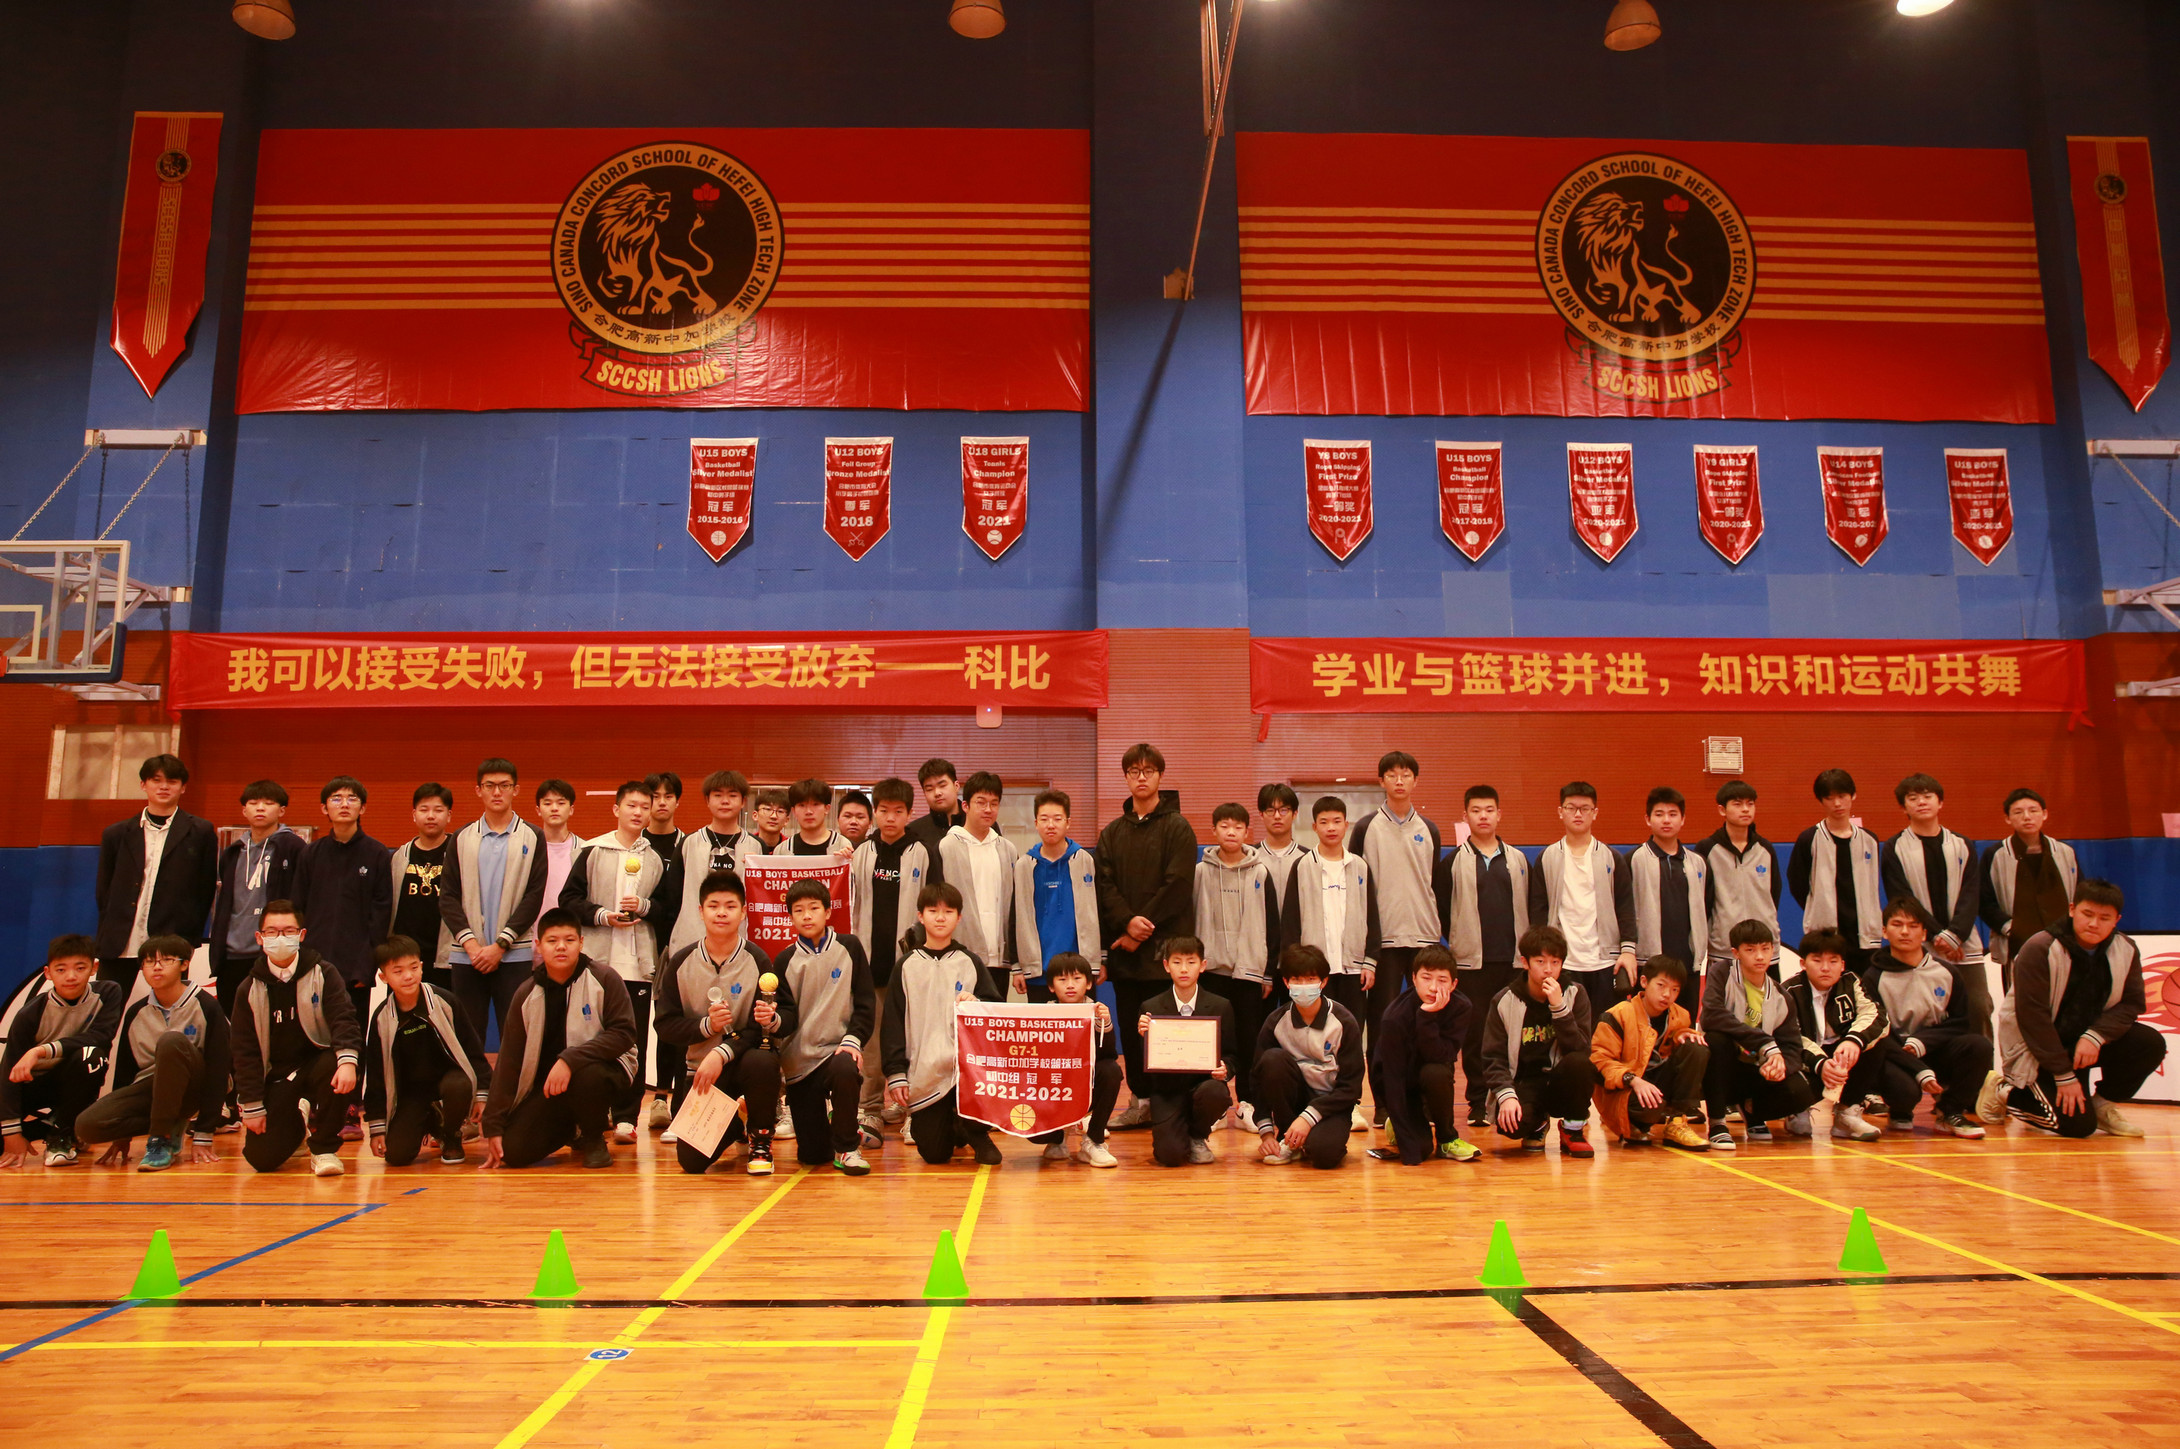 运动点燃热情 团结助力成长 —— 记合肥高新中加学校中学部第七届3V3篮球赛圆满落幕。